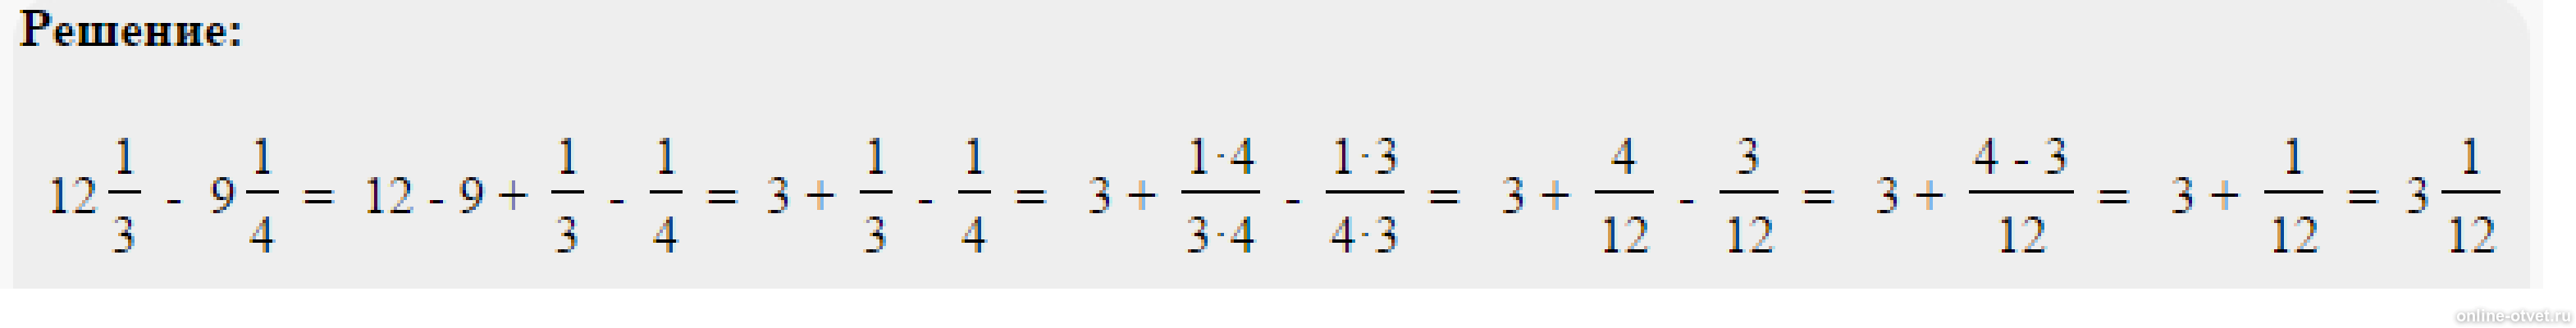 21 4 18 6. Решить пример одна целая одна пятая. Пример 4 целых3/8*2 целых 3/5*8/9. Решить пример 2 целых минус 1 целая 3/5. Минус 1 целая 3/8 минус 2 целых 5/12.